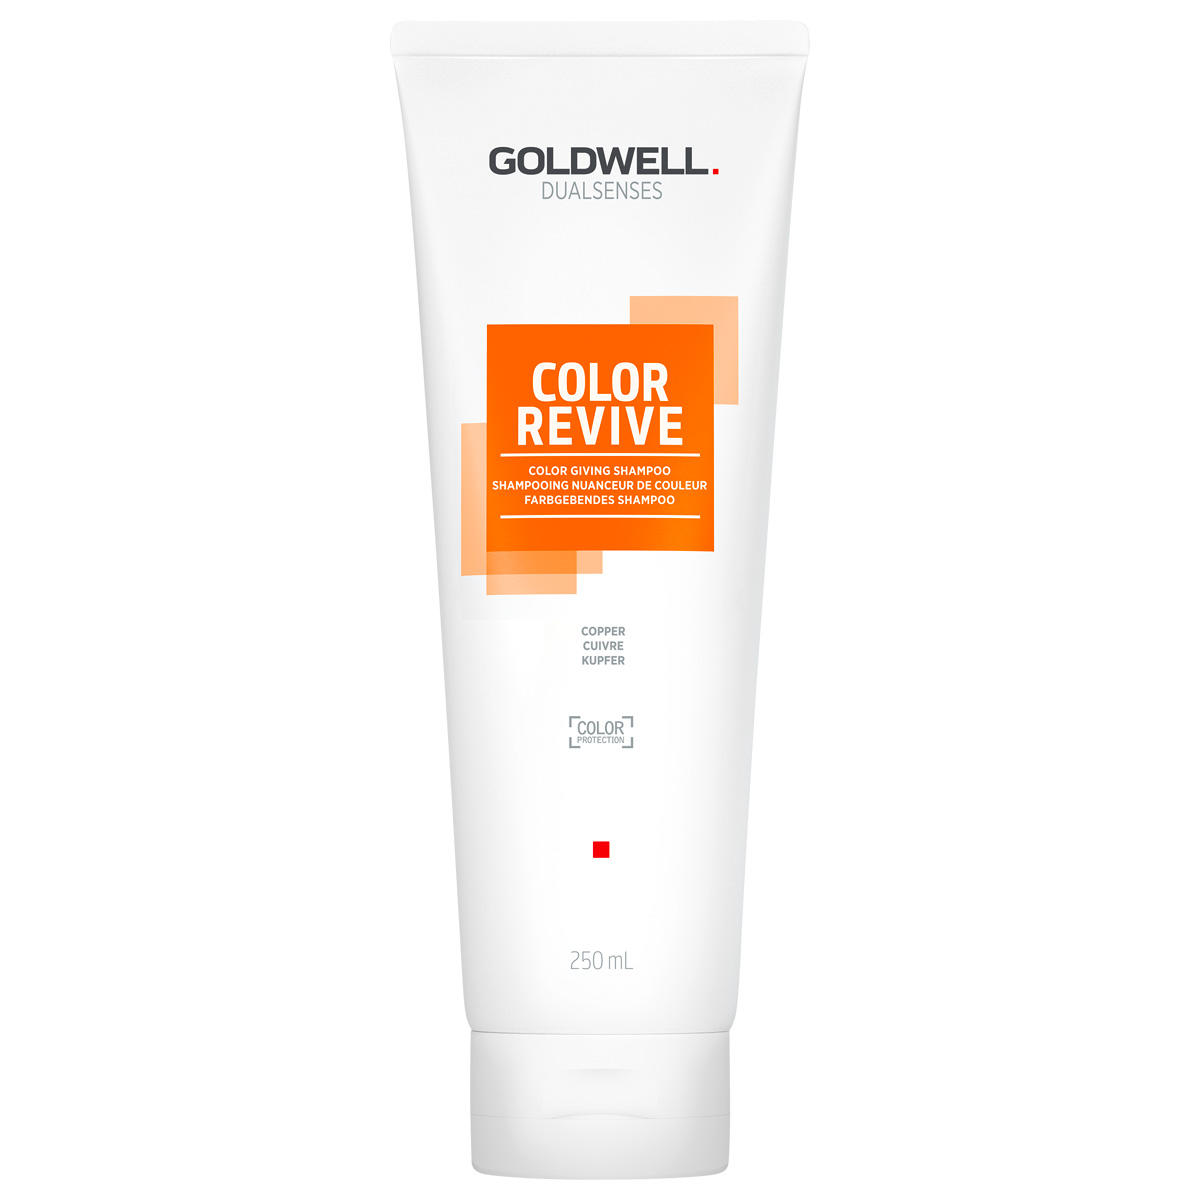 Goldwell Dualsenses Color Revive Farbgebendes Shampoo Kupfer 250 ml